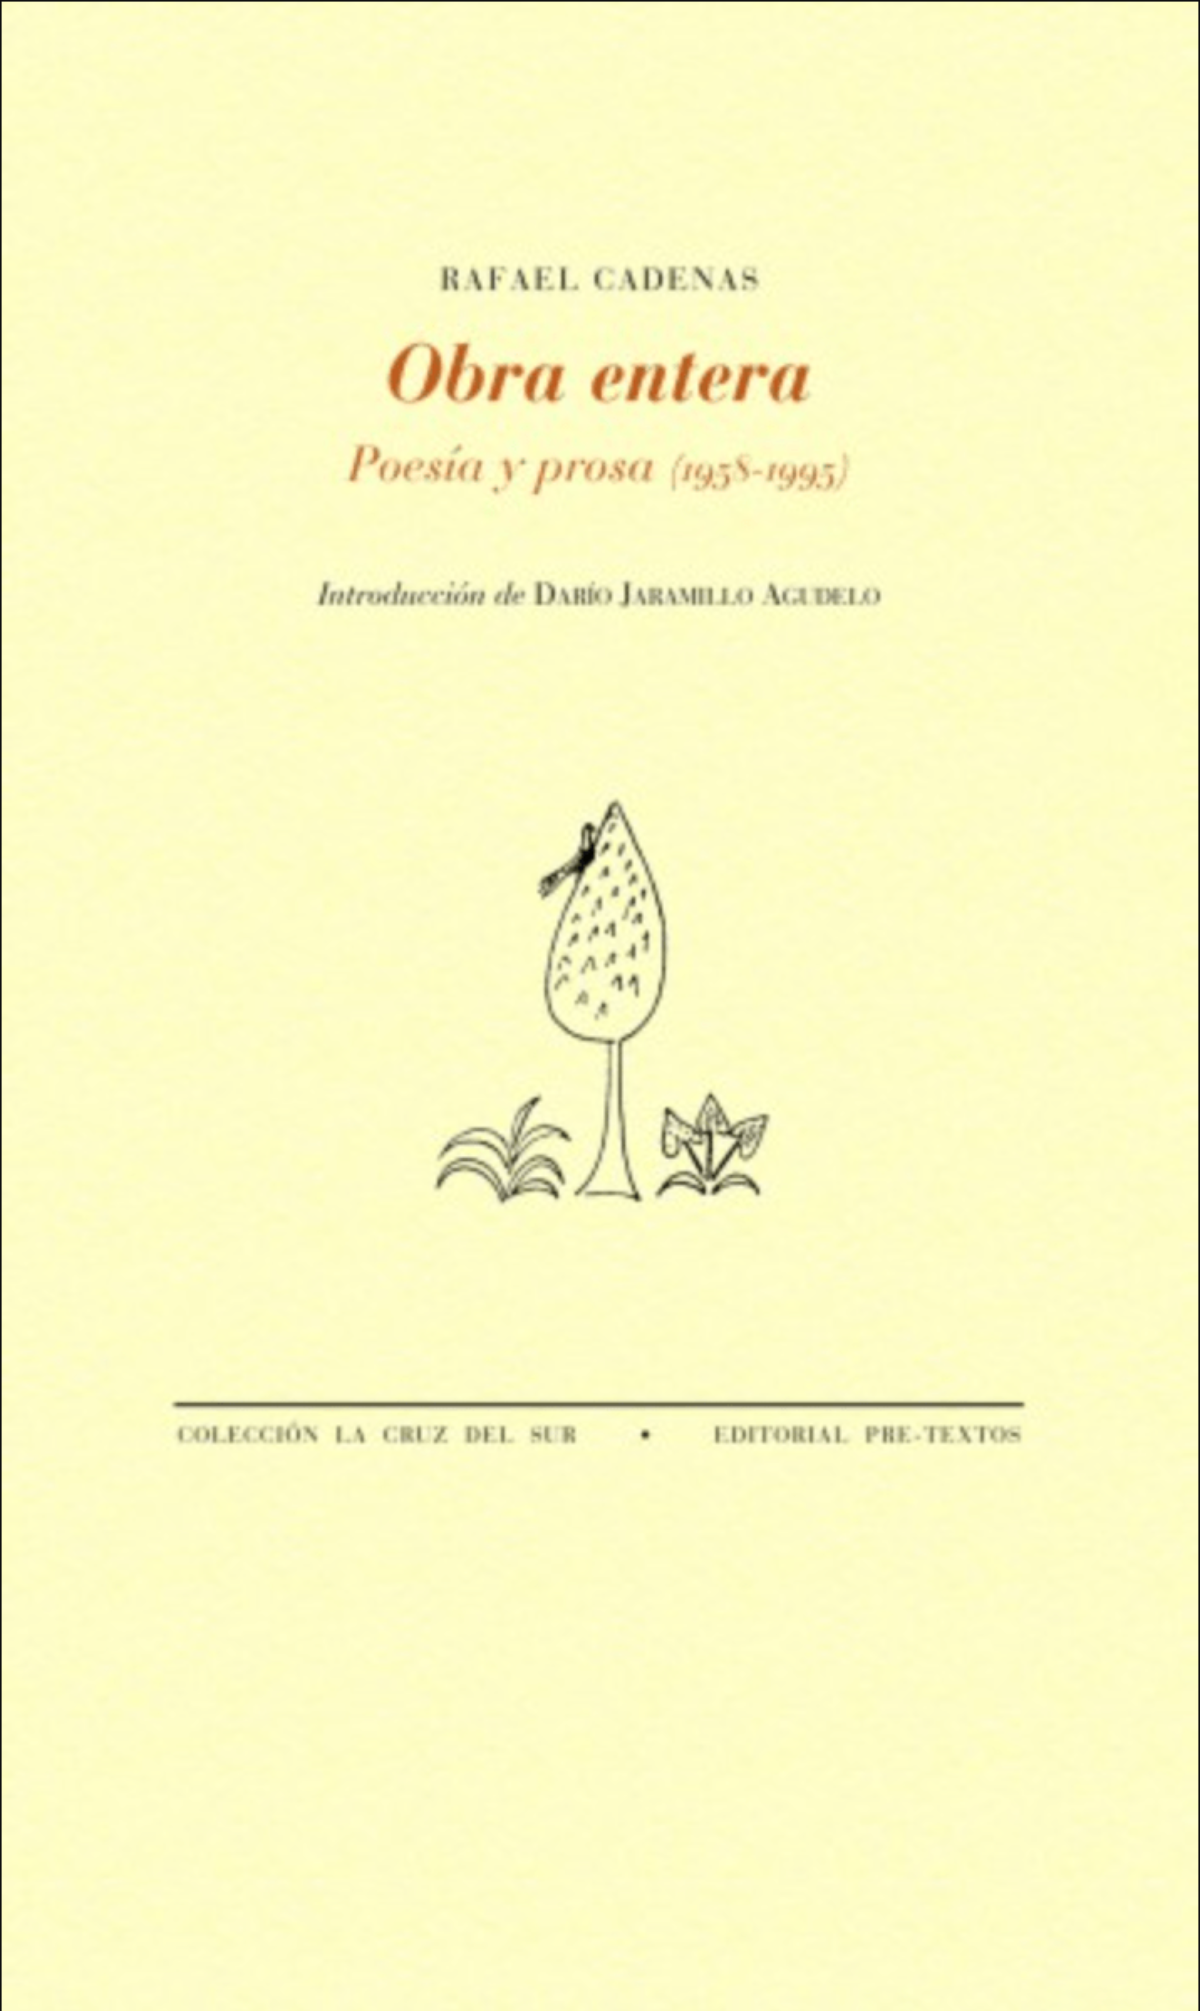 Rafael Cadenas / Obra entera. Poesía y prosa (1958-1995)